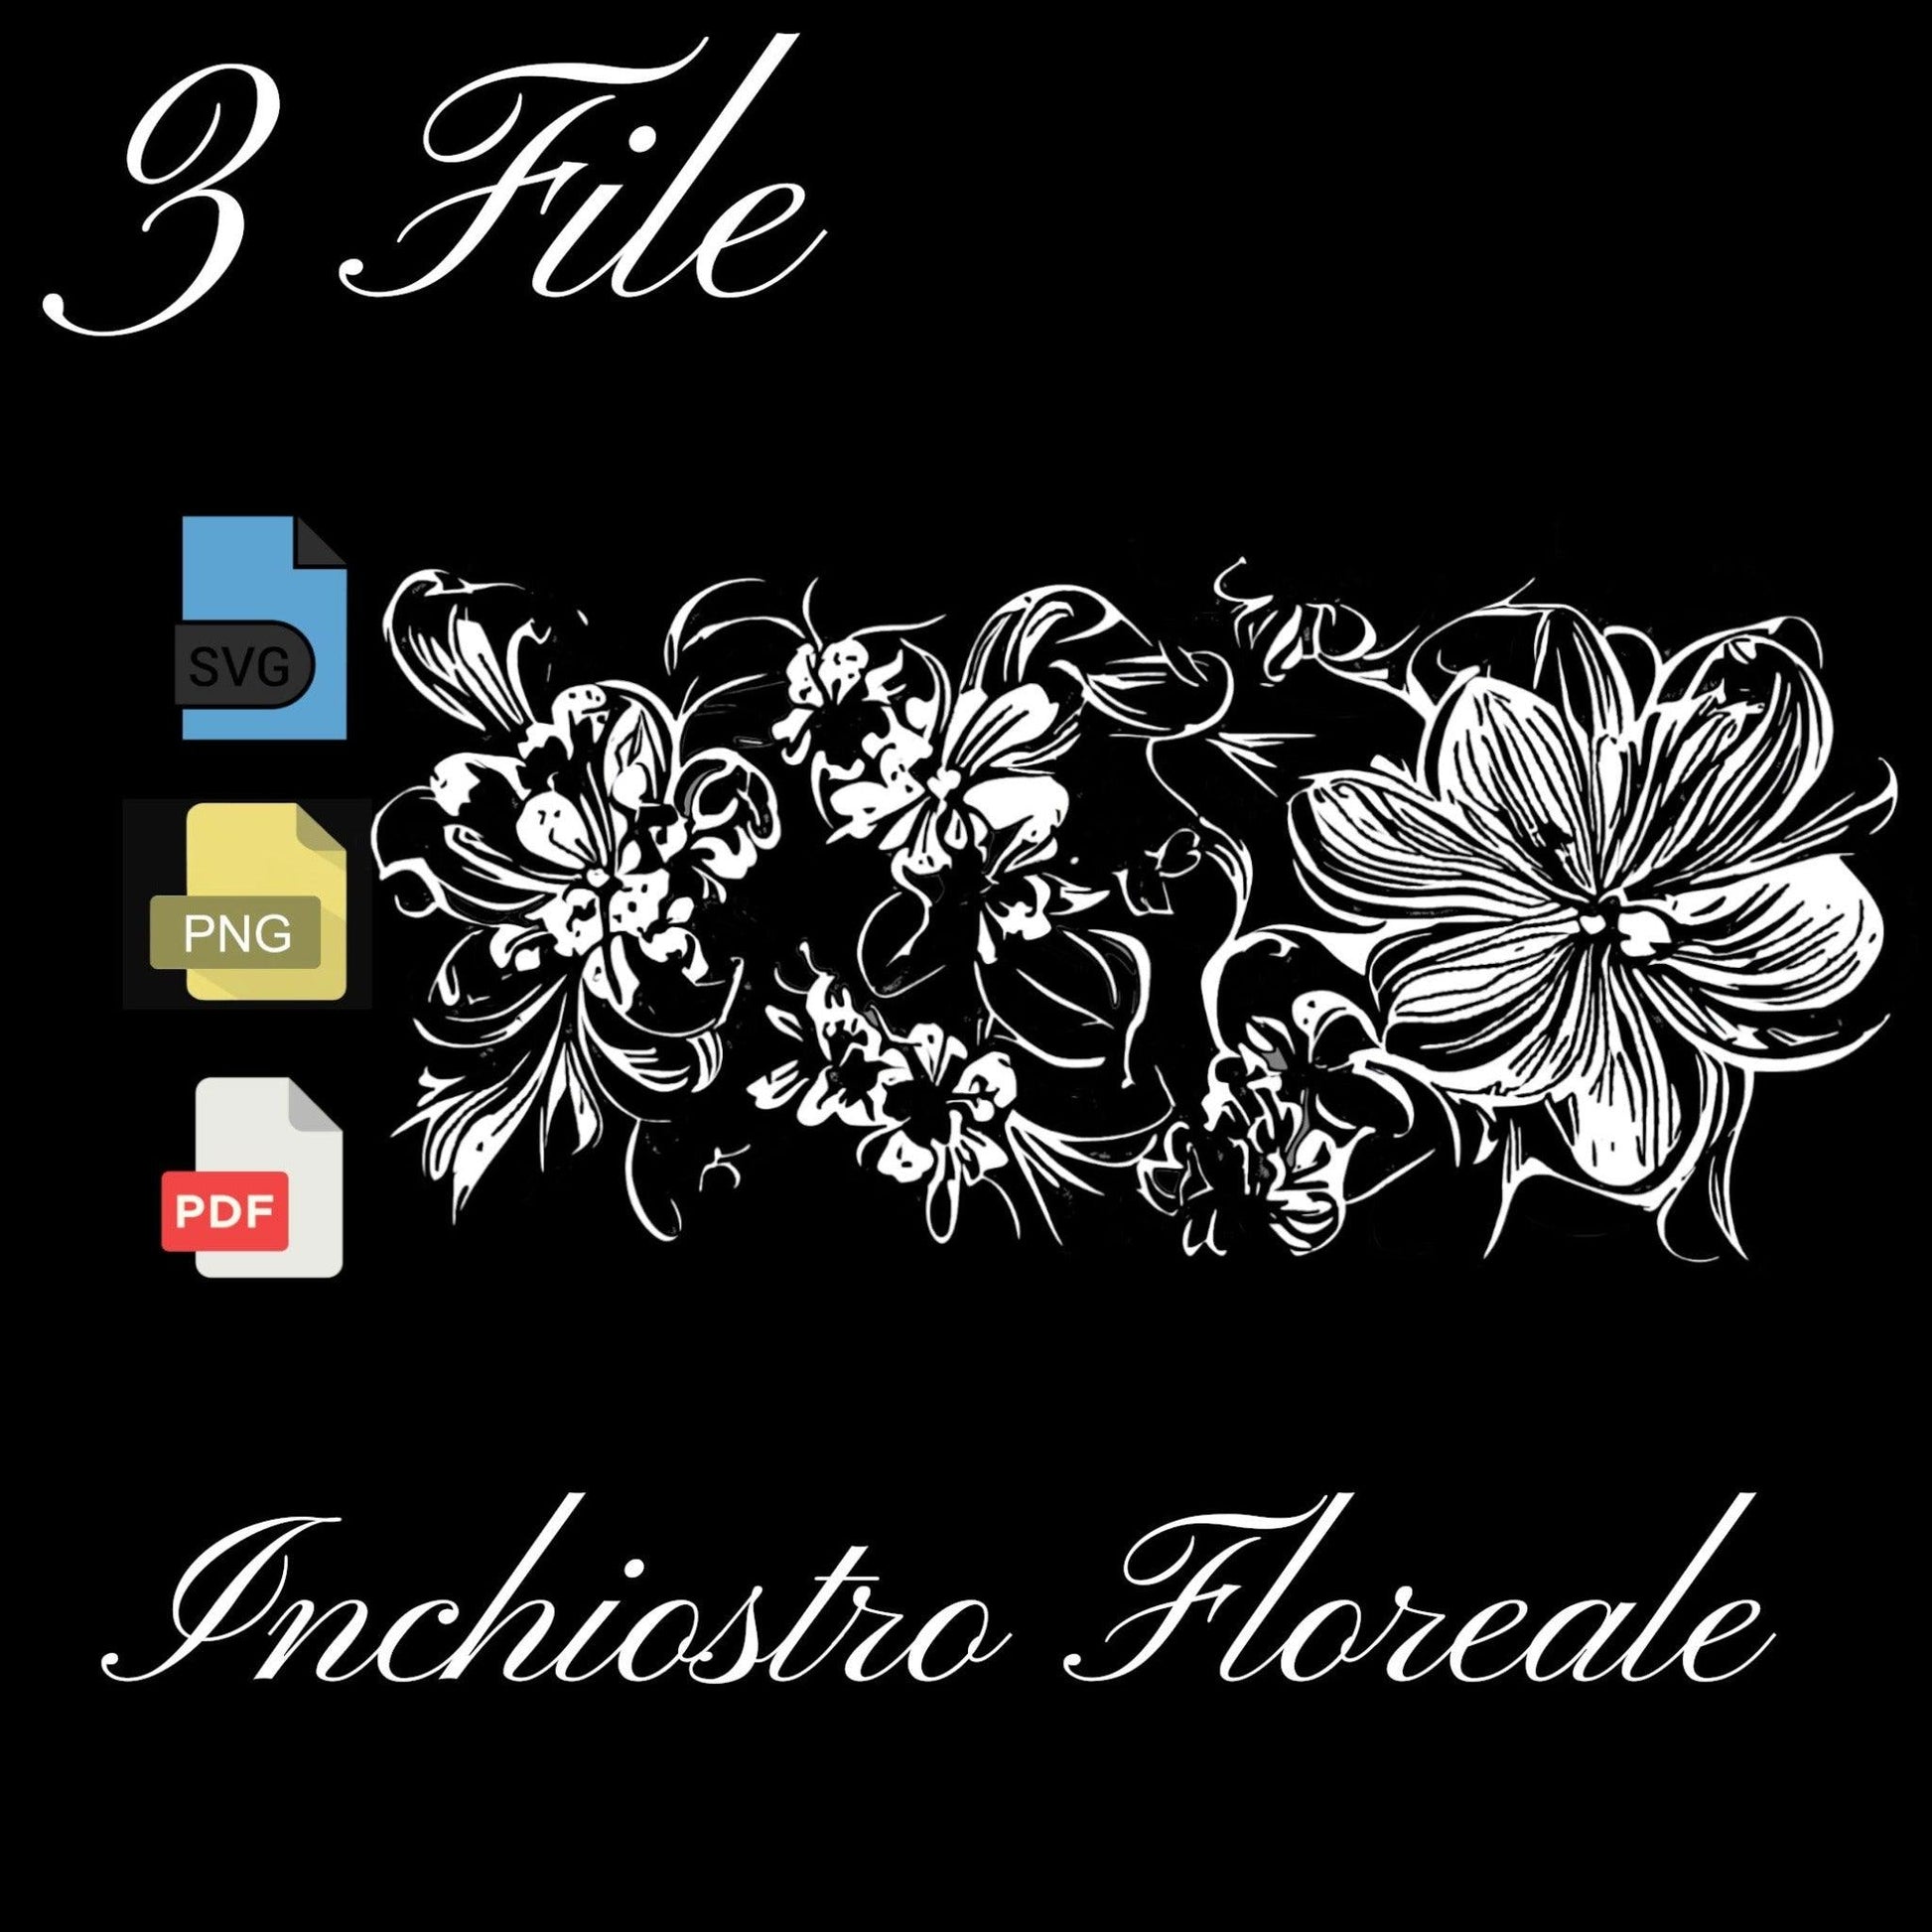 Inchiostro floreale 3 file bn